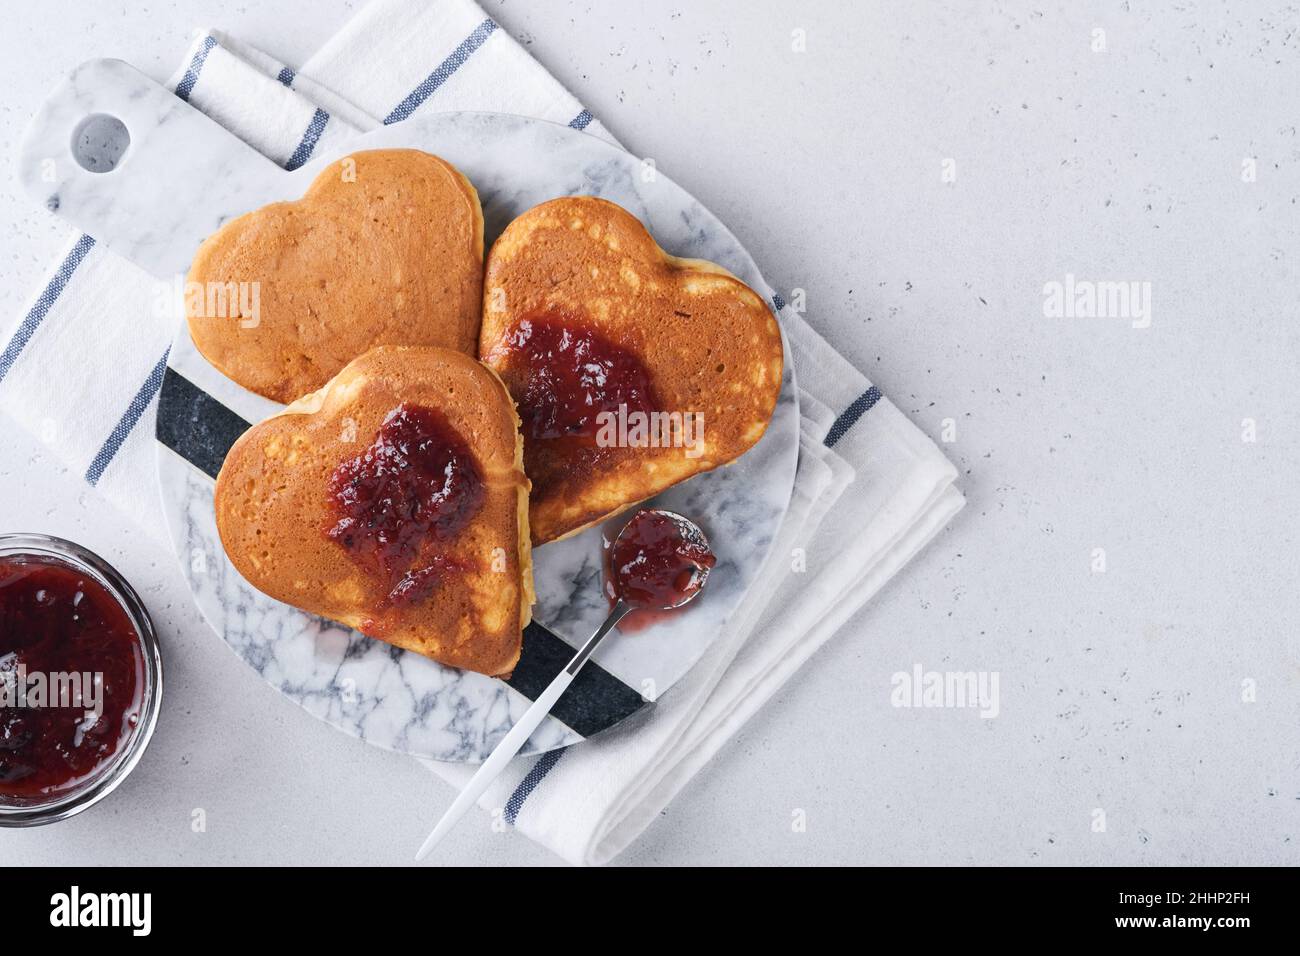 Zwei herzförmige Pfannkuchen mit Beerenmarmelade auf weißem Teller. Konzept eines festlichen Frühstücks zum Valentinstag oder einer angenehmen Überraschung für die Liebsten. Tisch vie Stockfoto